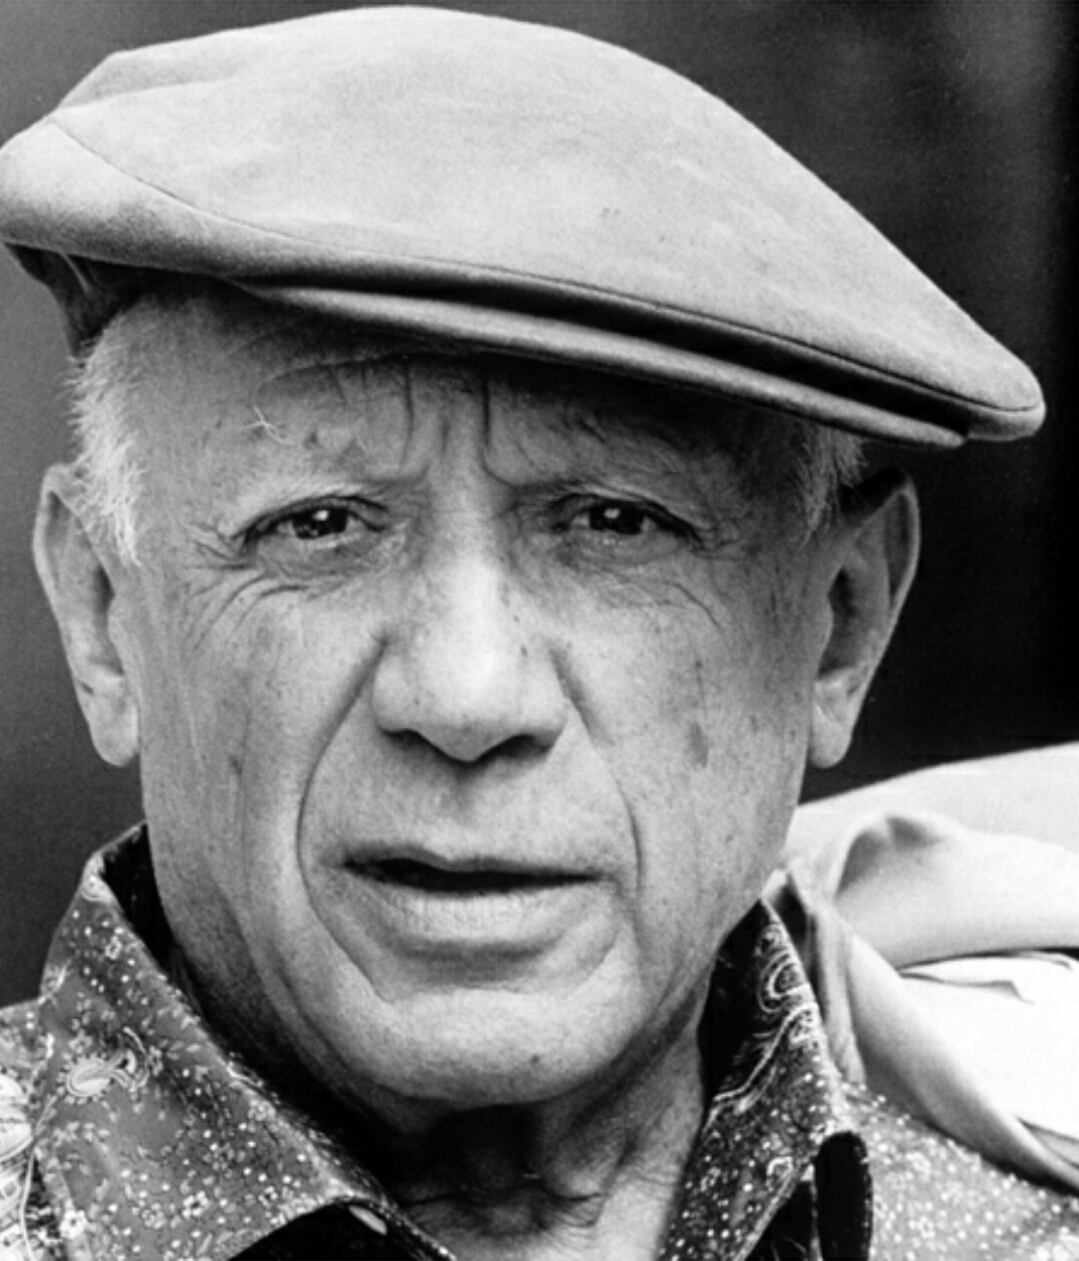 Pablo Picasso in 1962